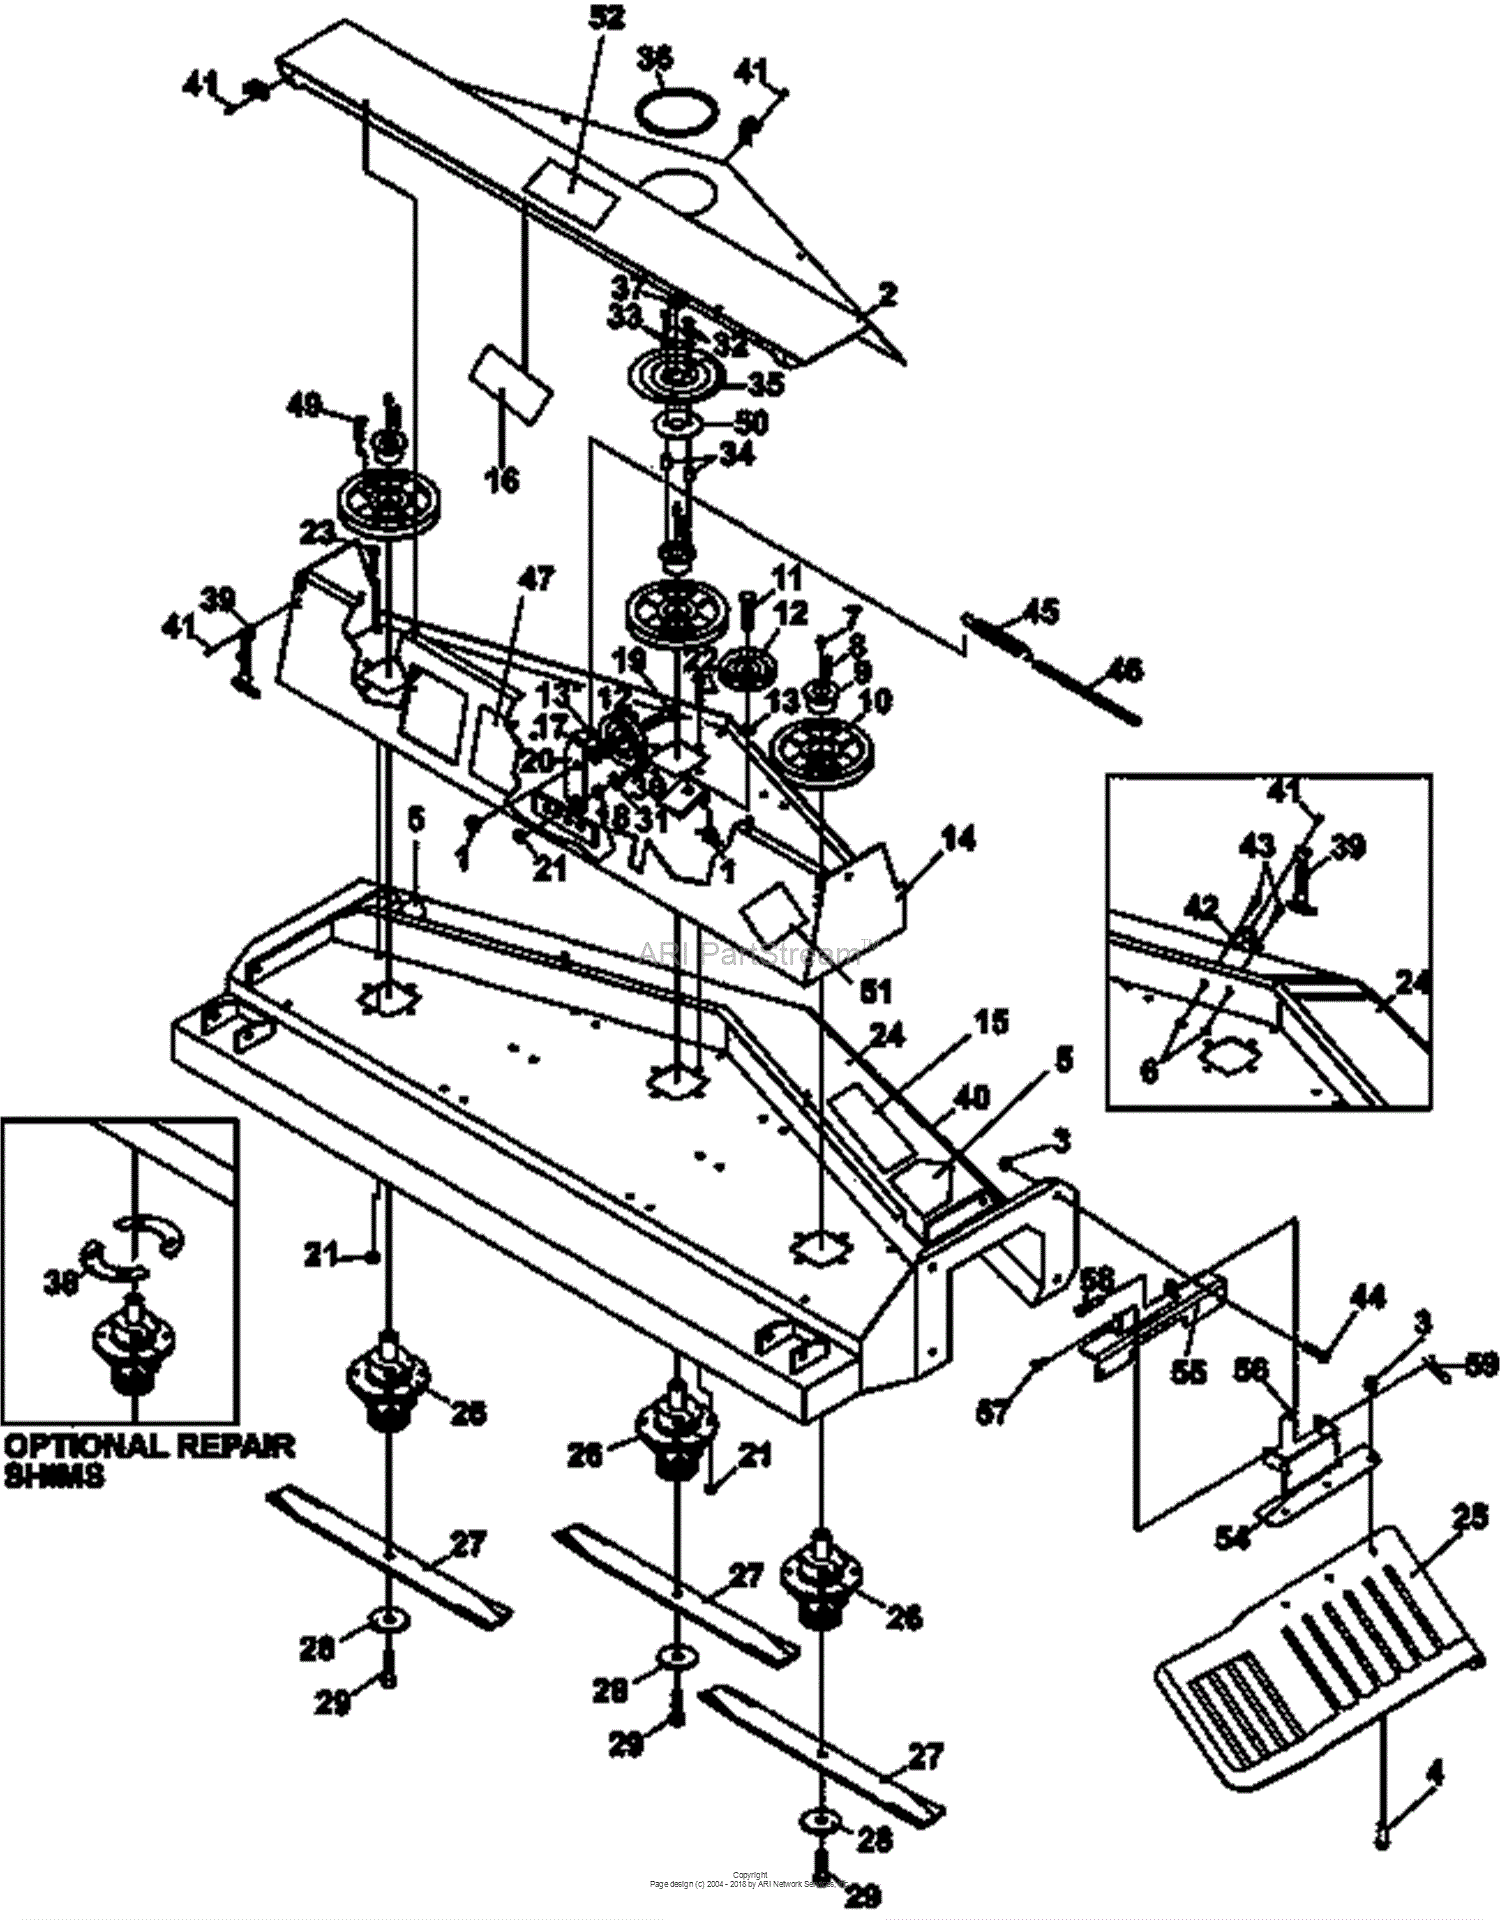 Bunton, Bobcat, Ryan 75-70860A Mower Deck 60 MD460 Parts Diagrams